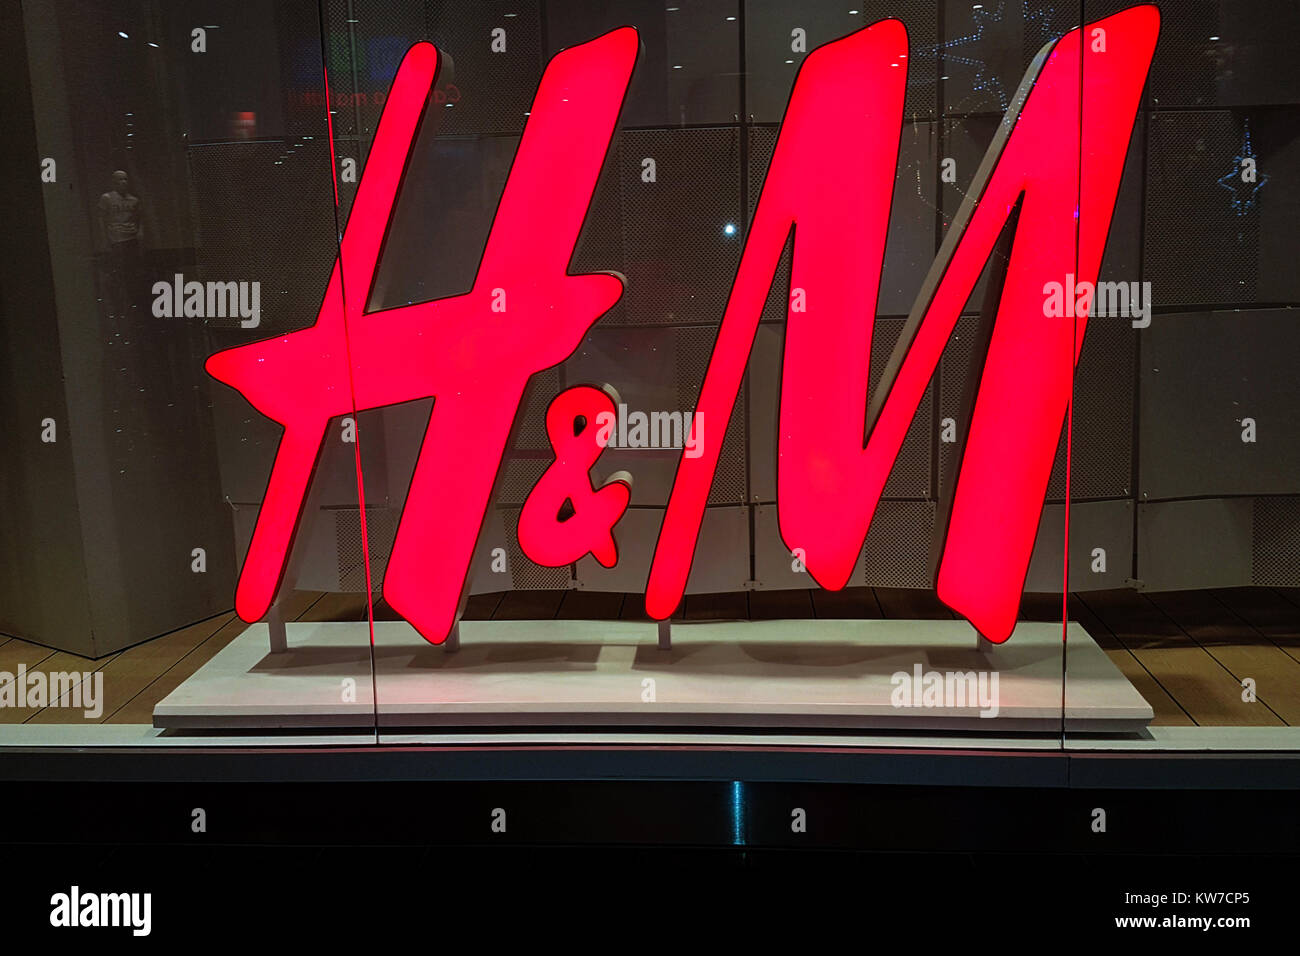 Nowy Sacz, Pologne - 20 décembre 2017 : Signe de le magasin H & M sur la fenêtre de magasinage en close-up. H&M est une célèbre multinationale suédoise retail-clothi Banque D'Images